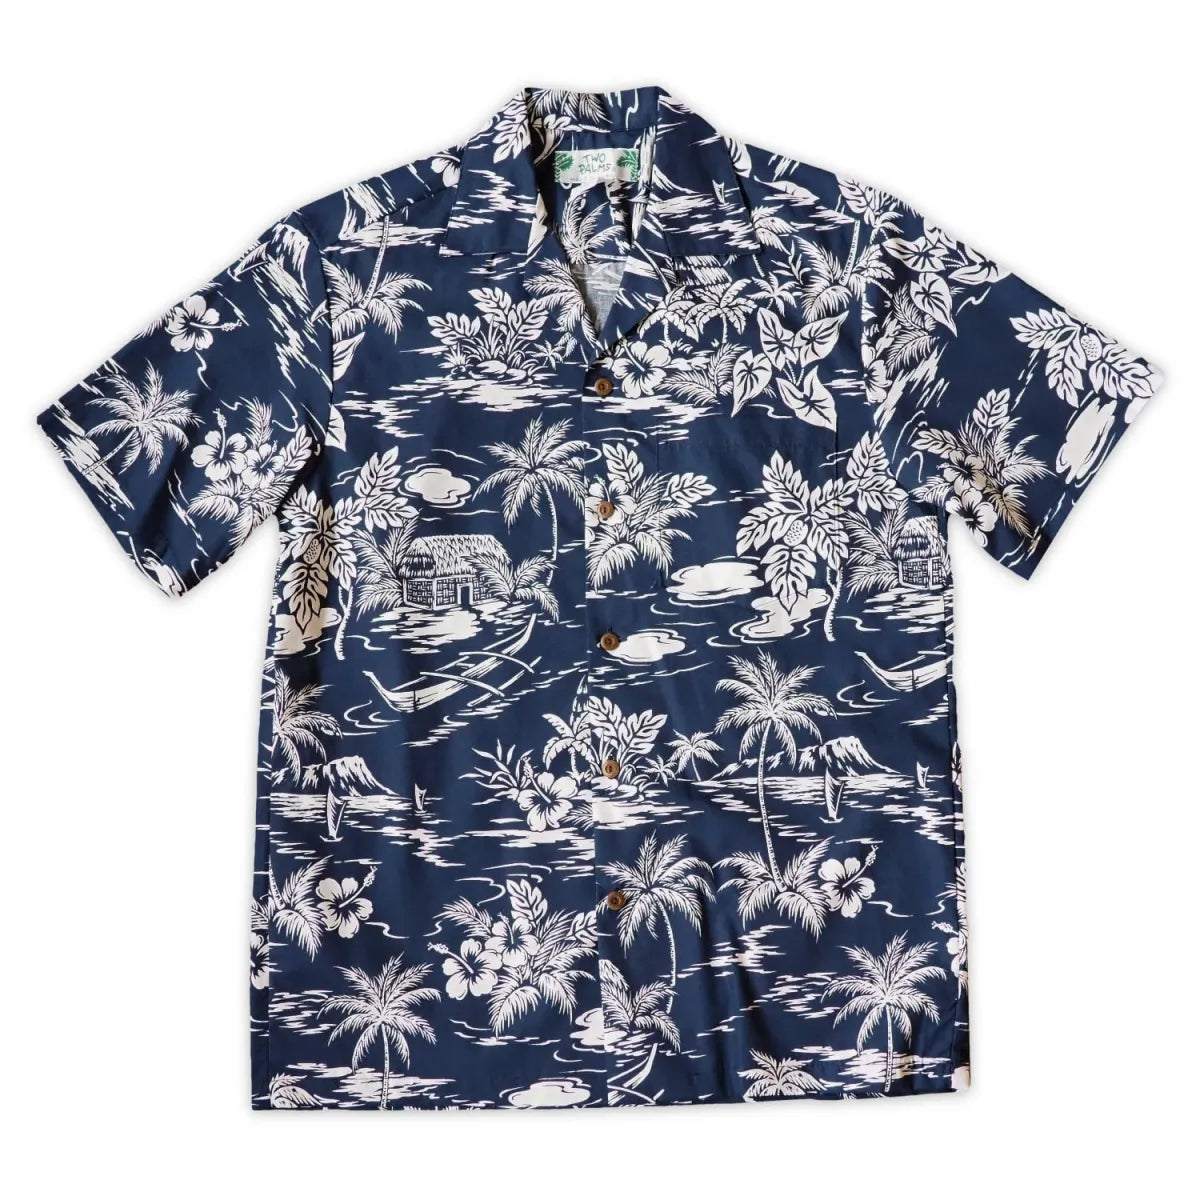 Island navy hawaiian cotton shirt